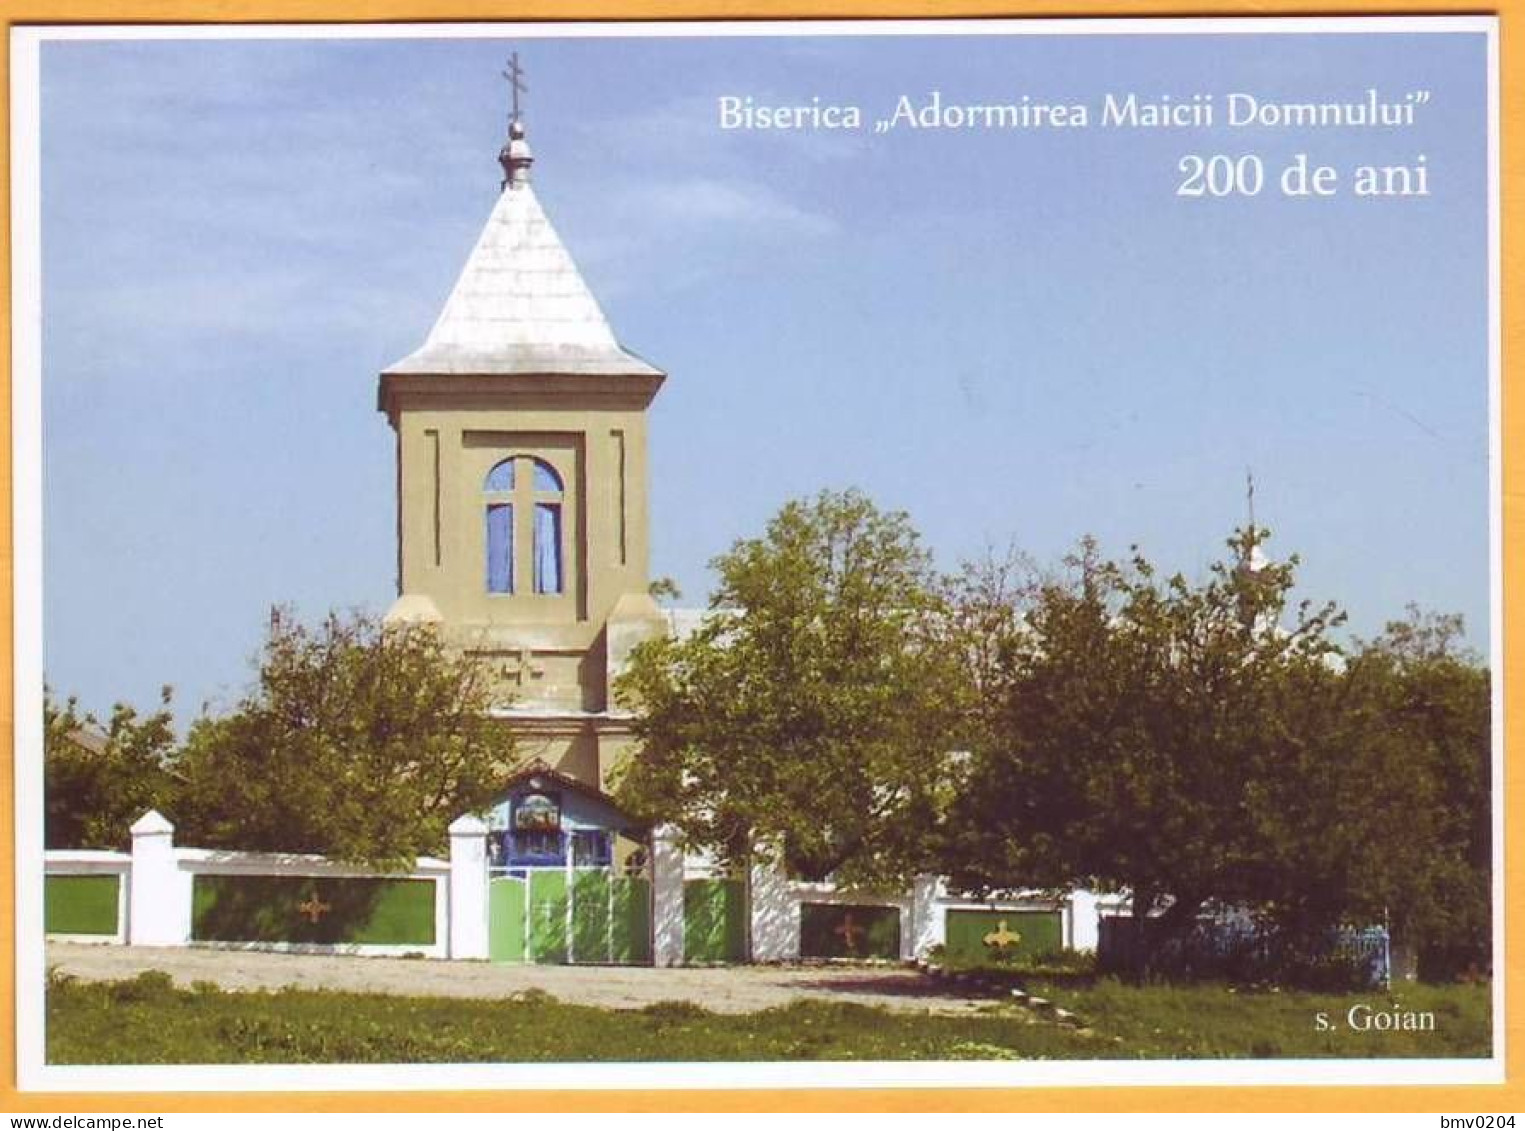 2017  Moldova Moldavie Moldau. FDC  Goian Ciorescu Christianity. Bessarabia. Church. 200 Years. Postcard. - Moldawien (Moldau)